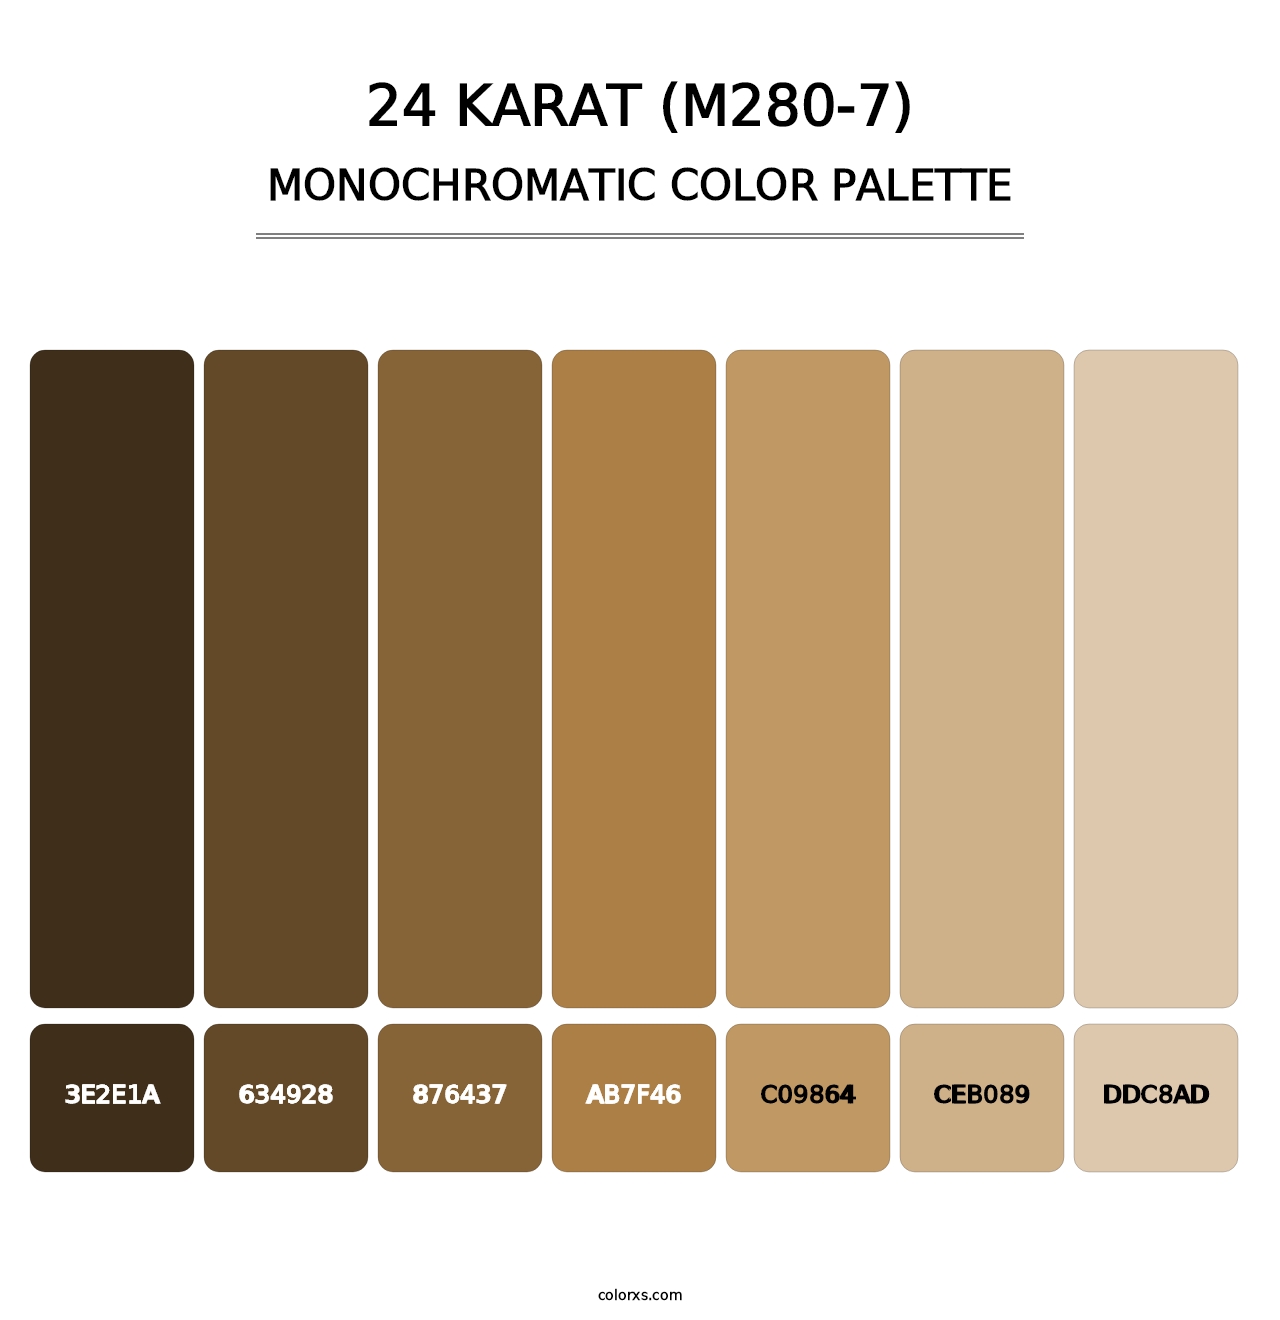 24 Karat (M280-7) - Monochromatic Color Palette